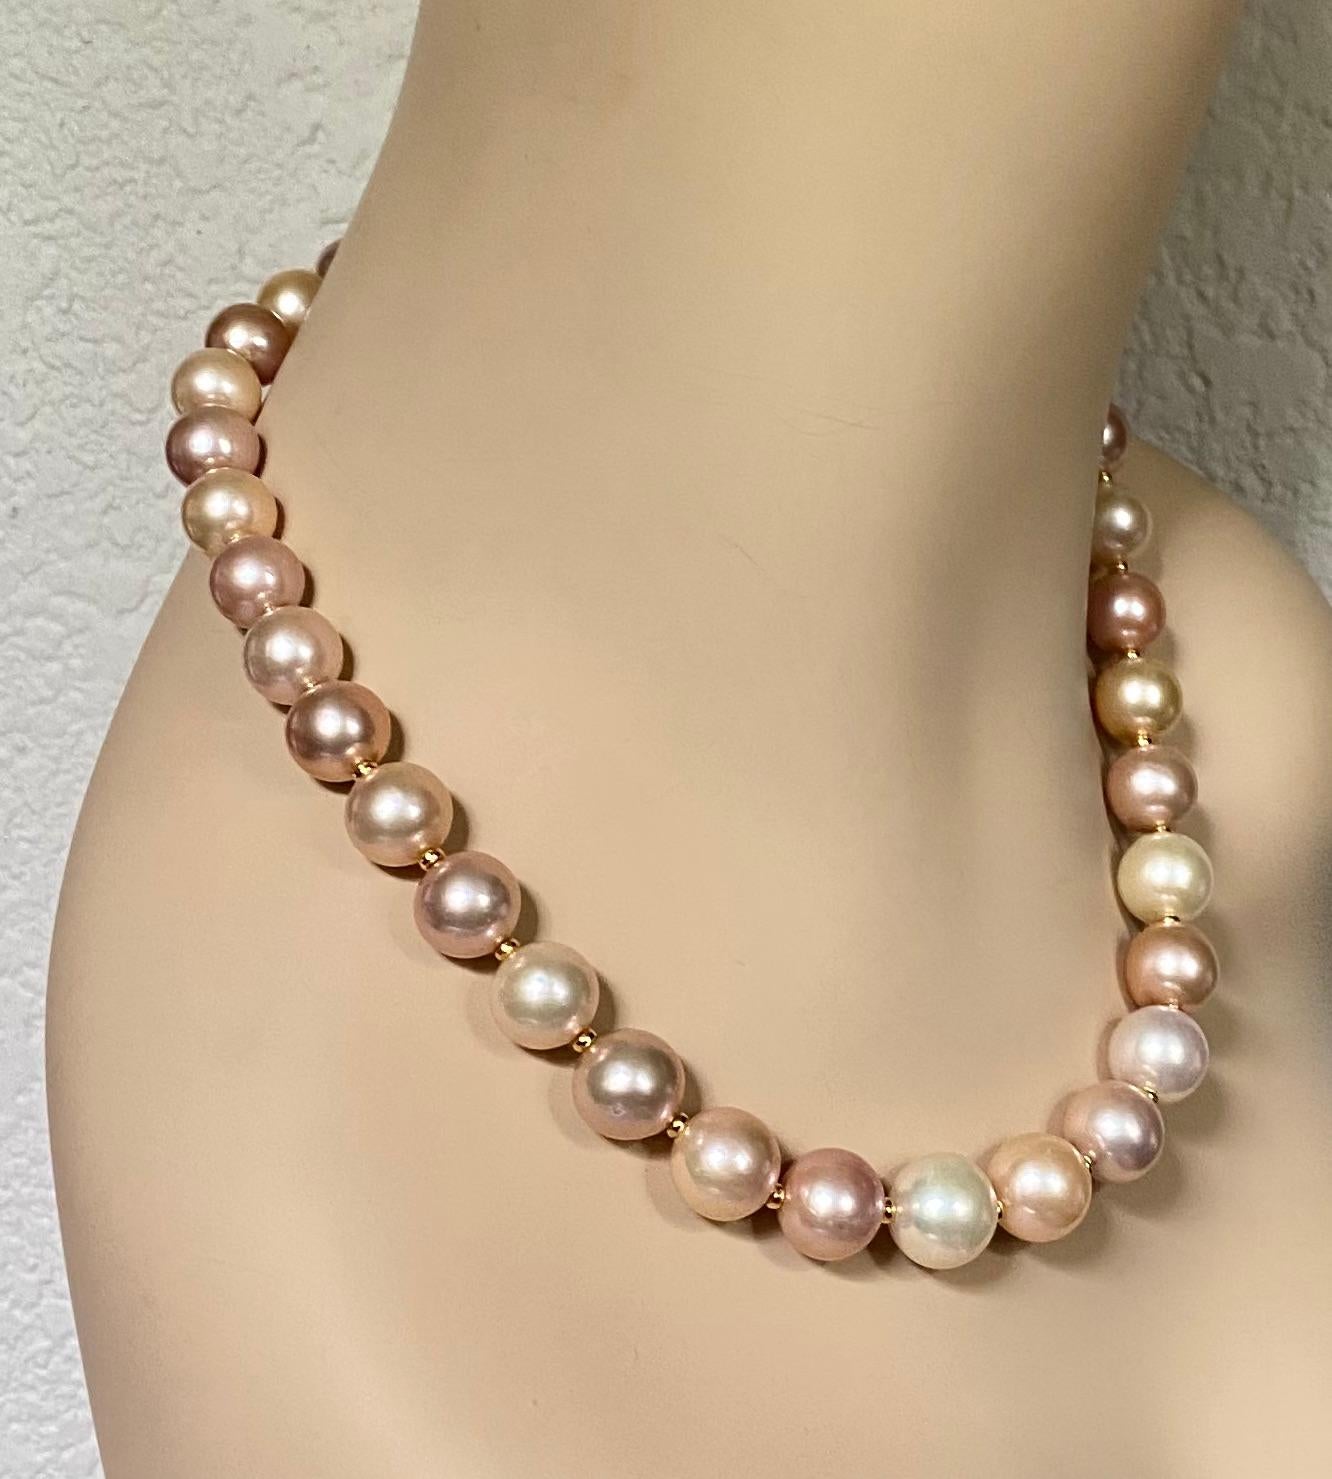 Des perles d'eau douce de qualité sont mises en valeur dans cet élégant collier.  Trente-deux perles de taille variable, de la plus grande (14 mm) à la plus petite (12 mm).  Ils possèdent un riche lustre et sont exempts d'imperfections.  Les perles